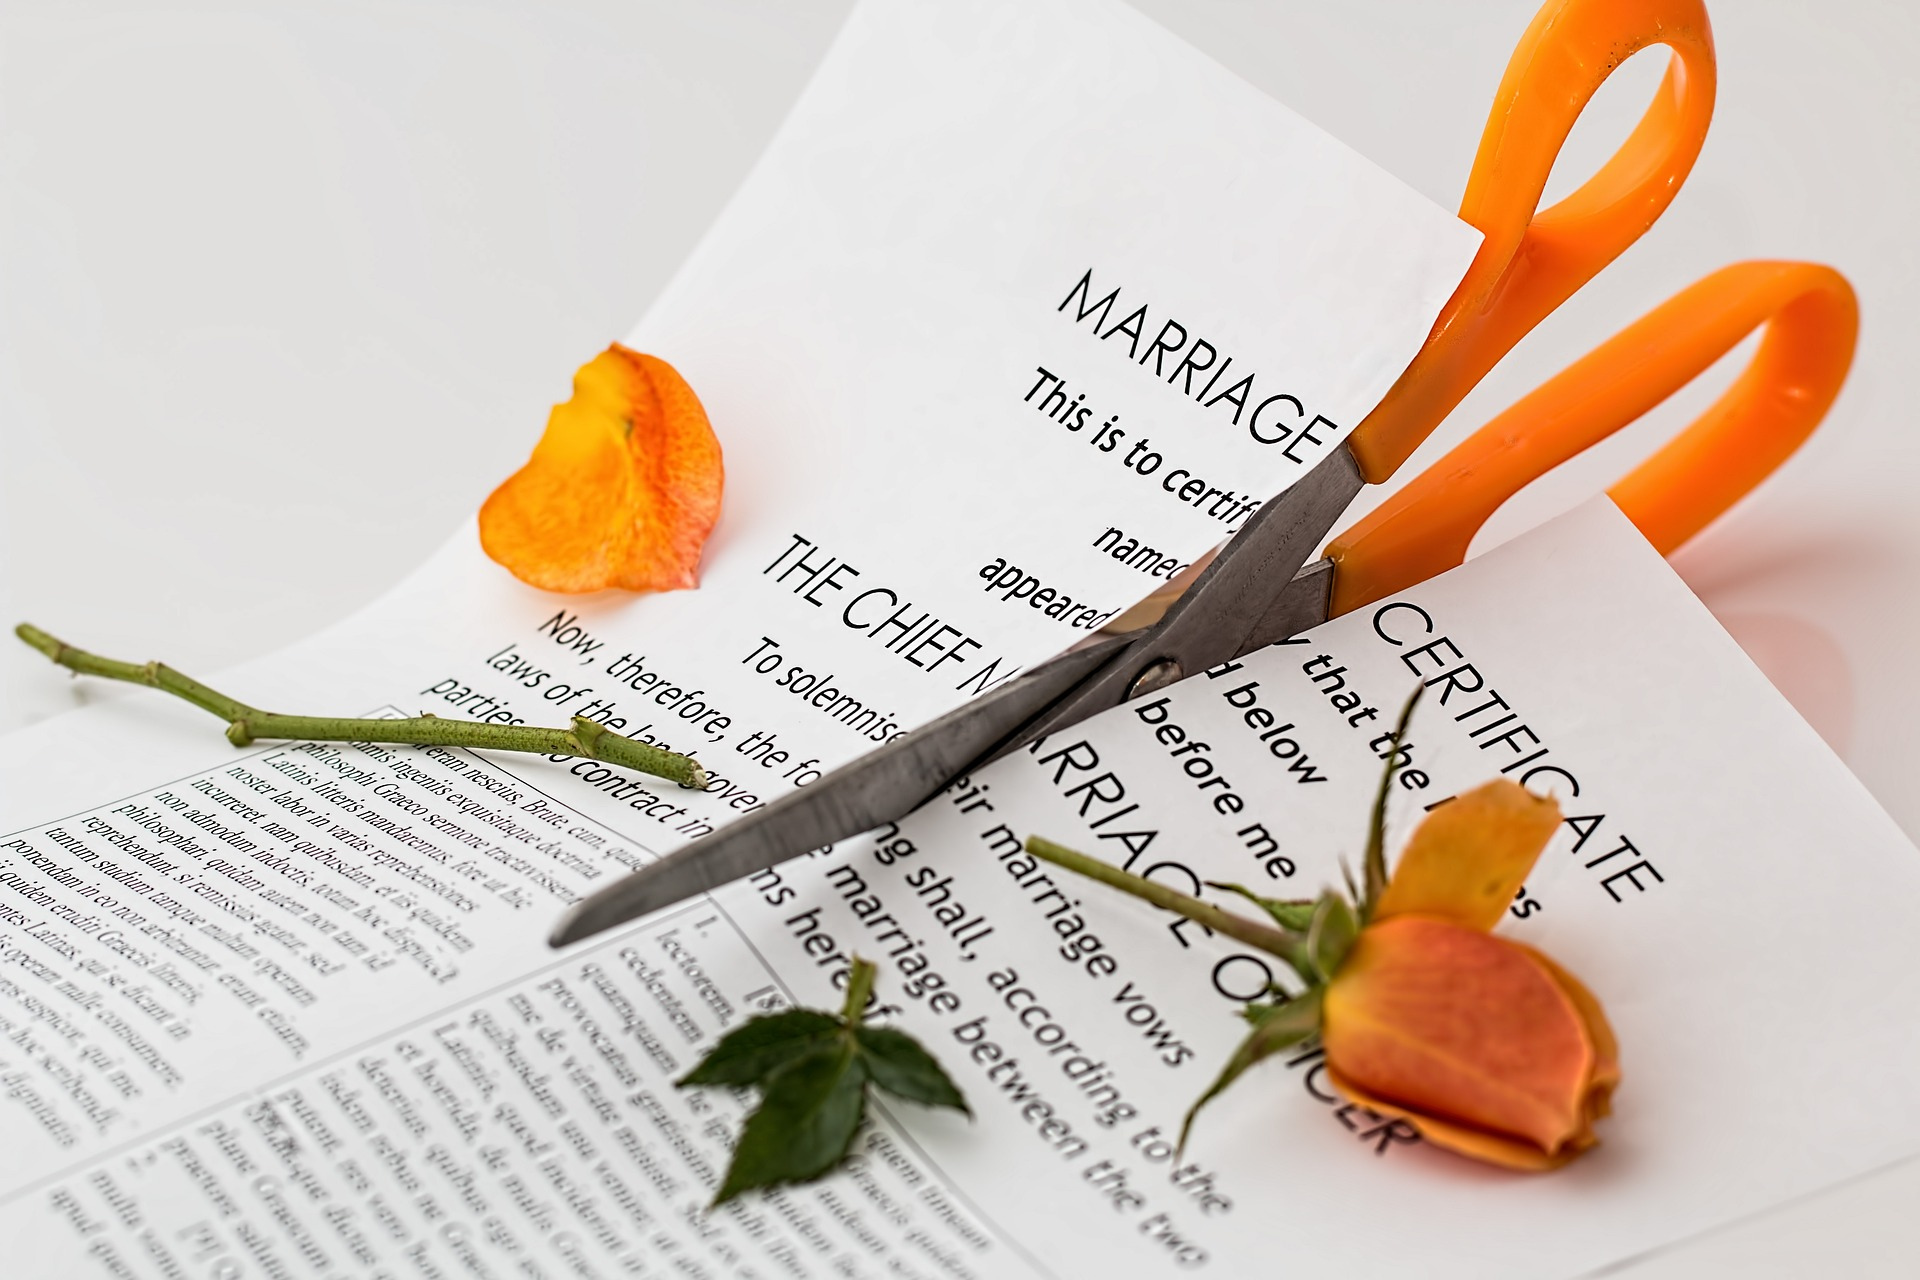 A megoldatlan kapcsolati problémák gyakran váláshoz vezetnek